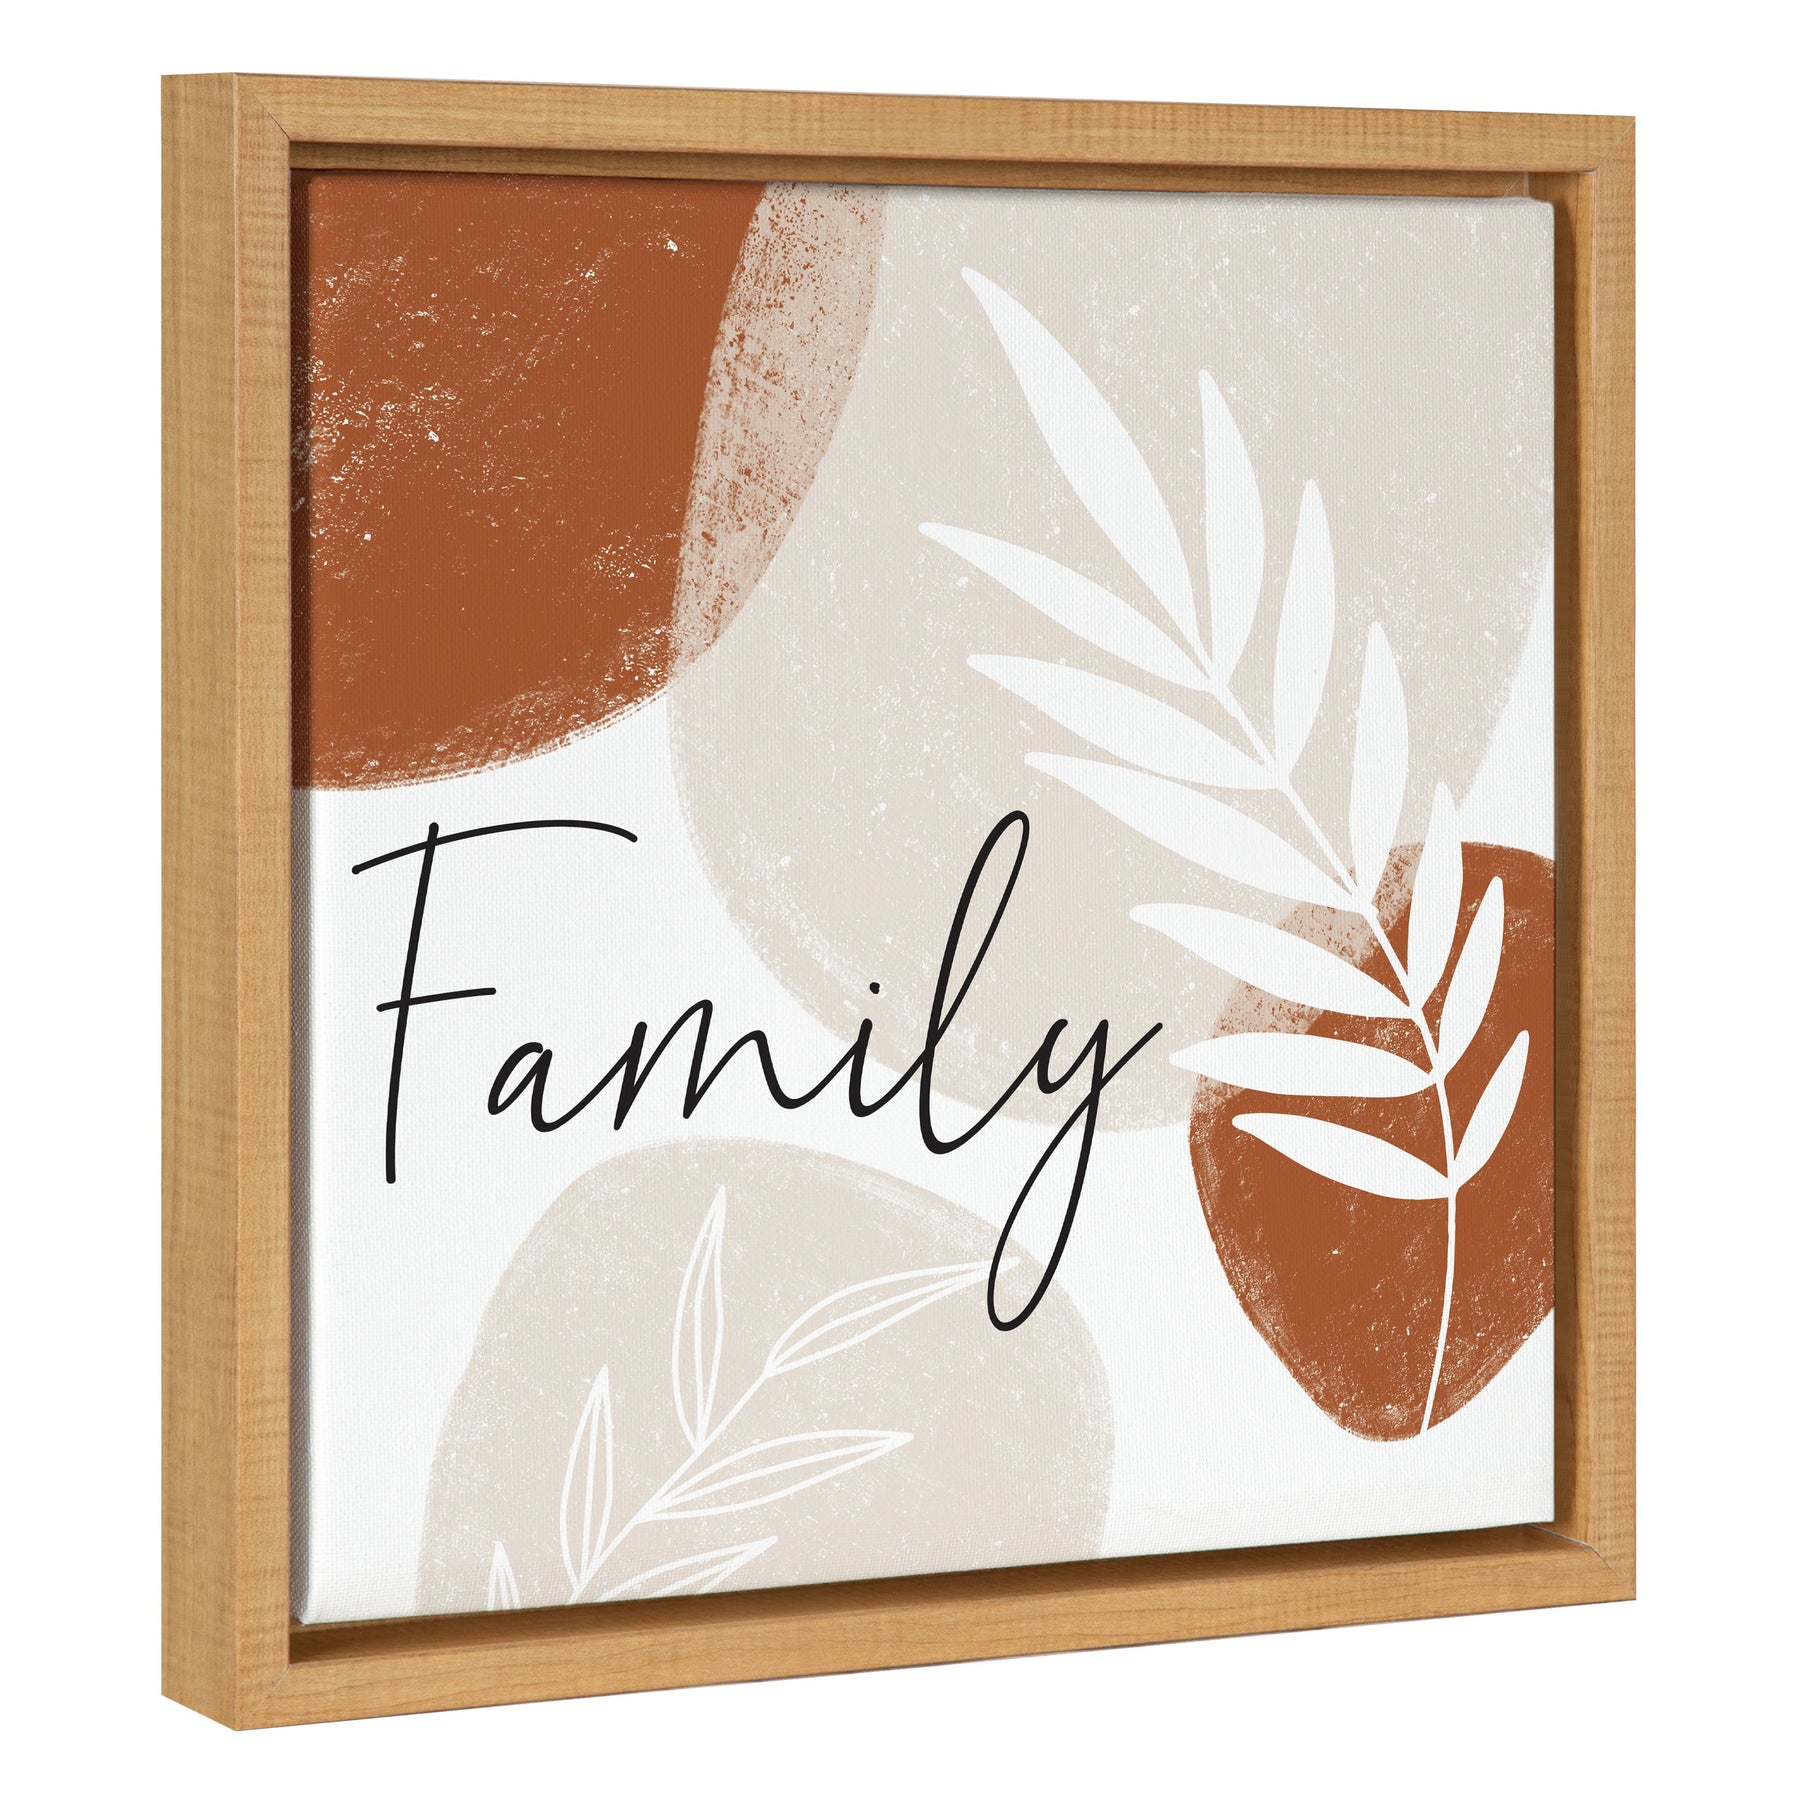 Family / 14x14 Framed Canvas